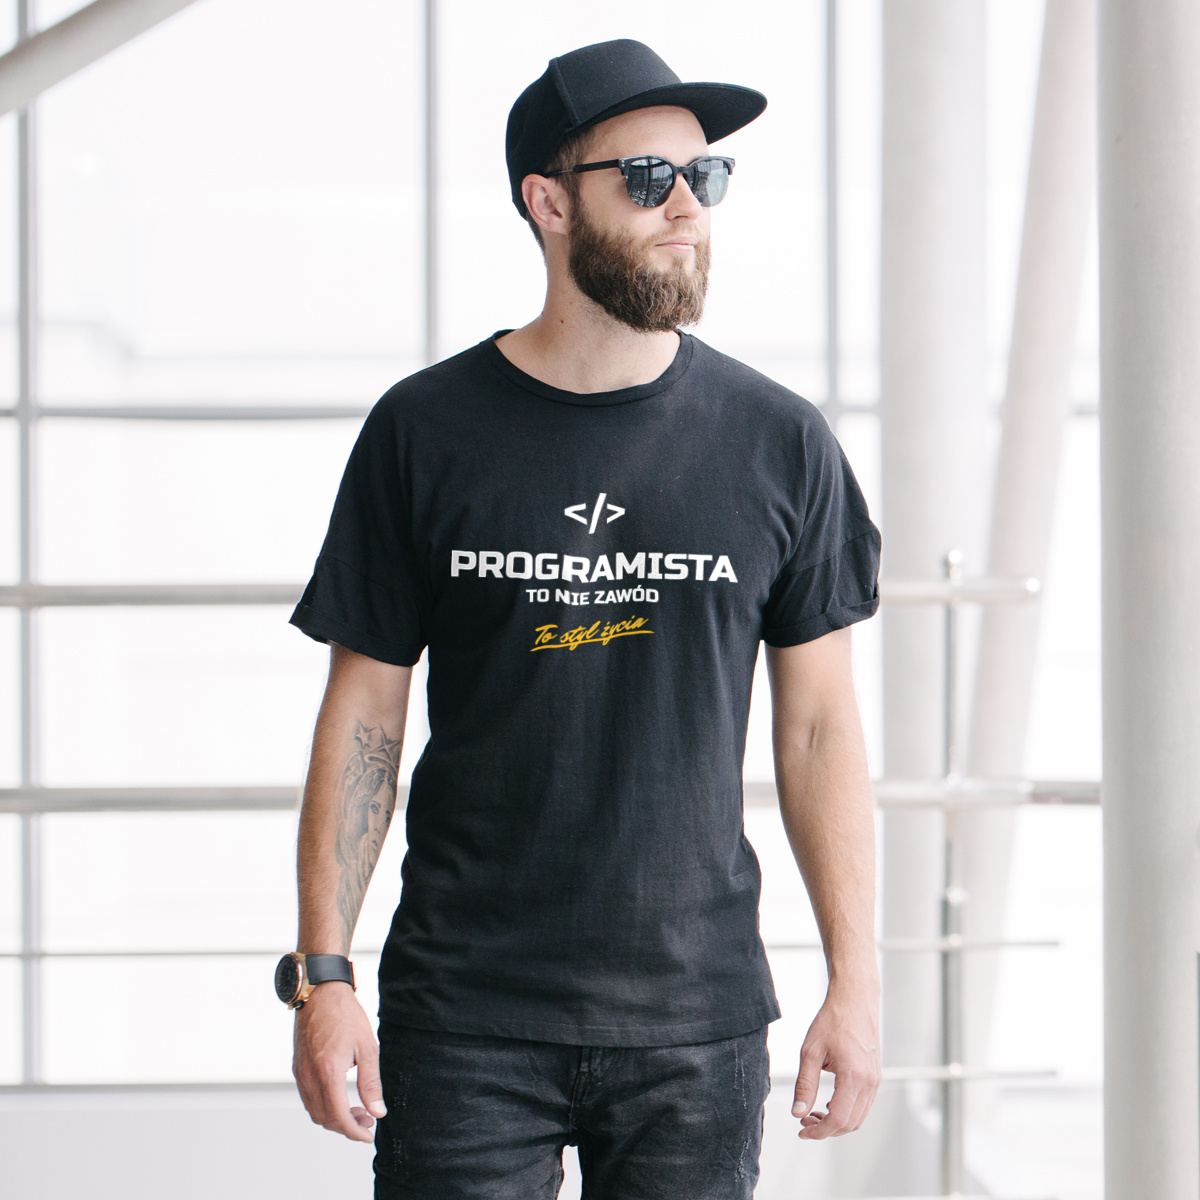 Programista To Nie Zawód - To Styl Życia - Męska Koszulka Czarna